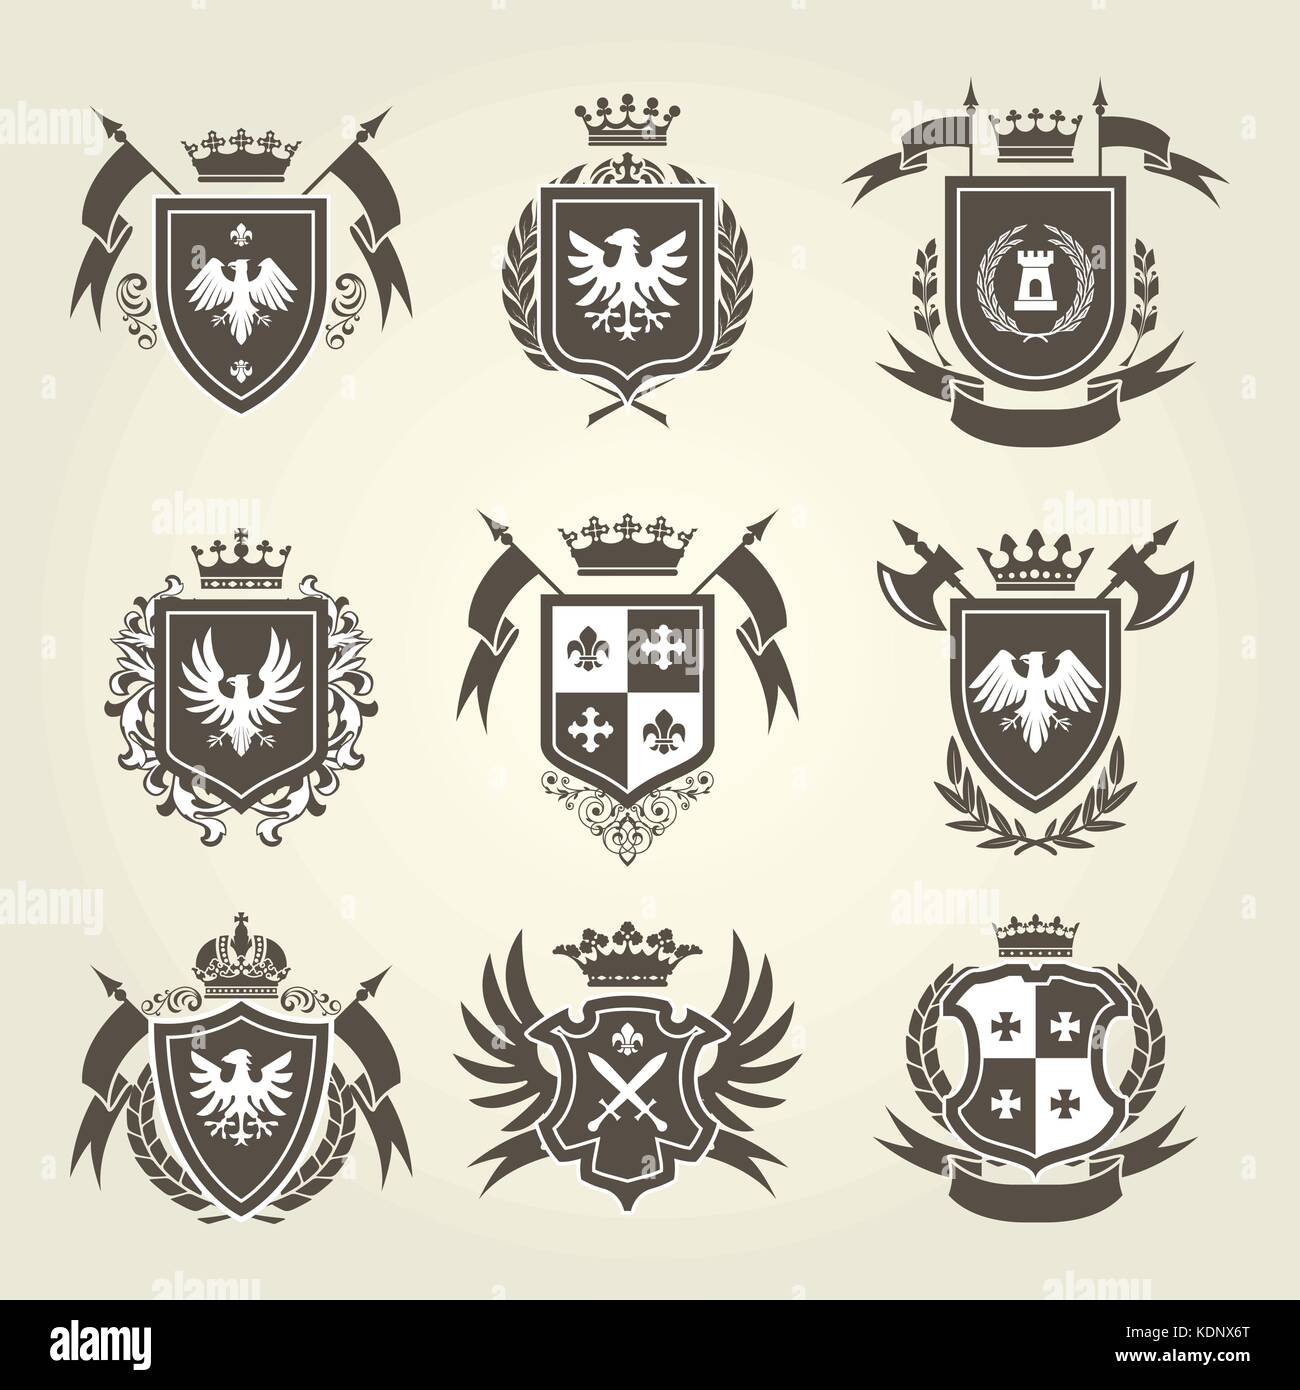 Royal médiéval armoiries et emblèmes Knight - bouclier héraldique cimier Illustration de Vecteur